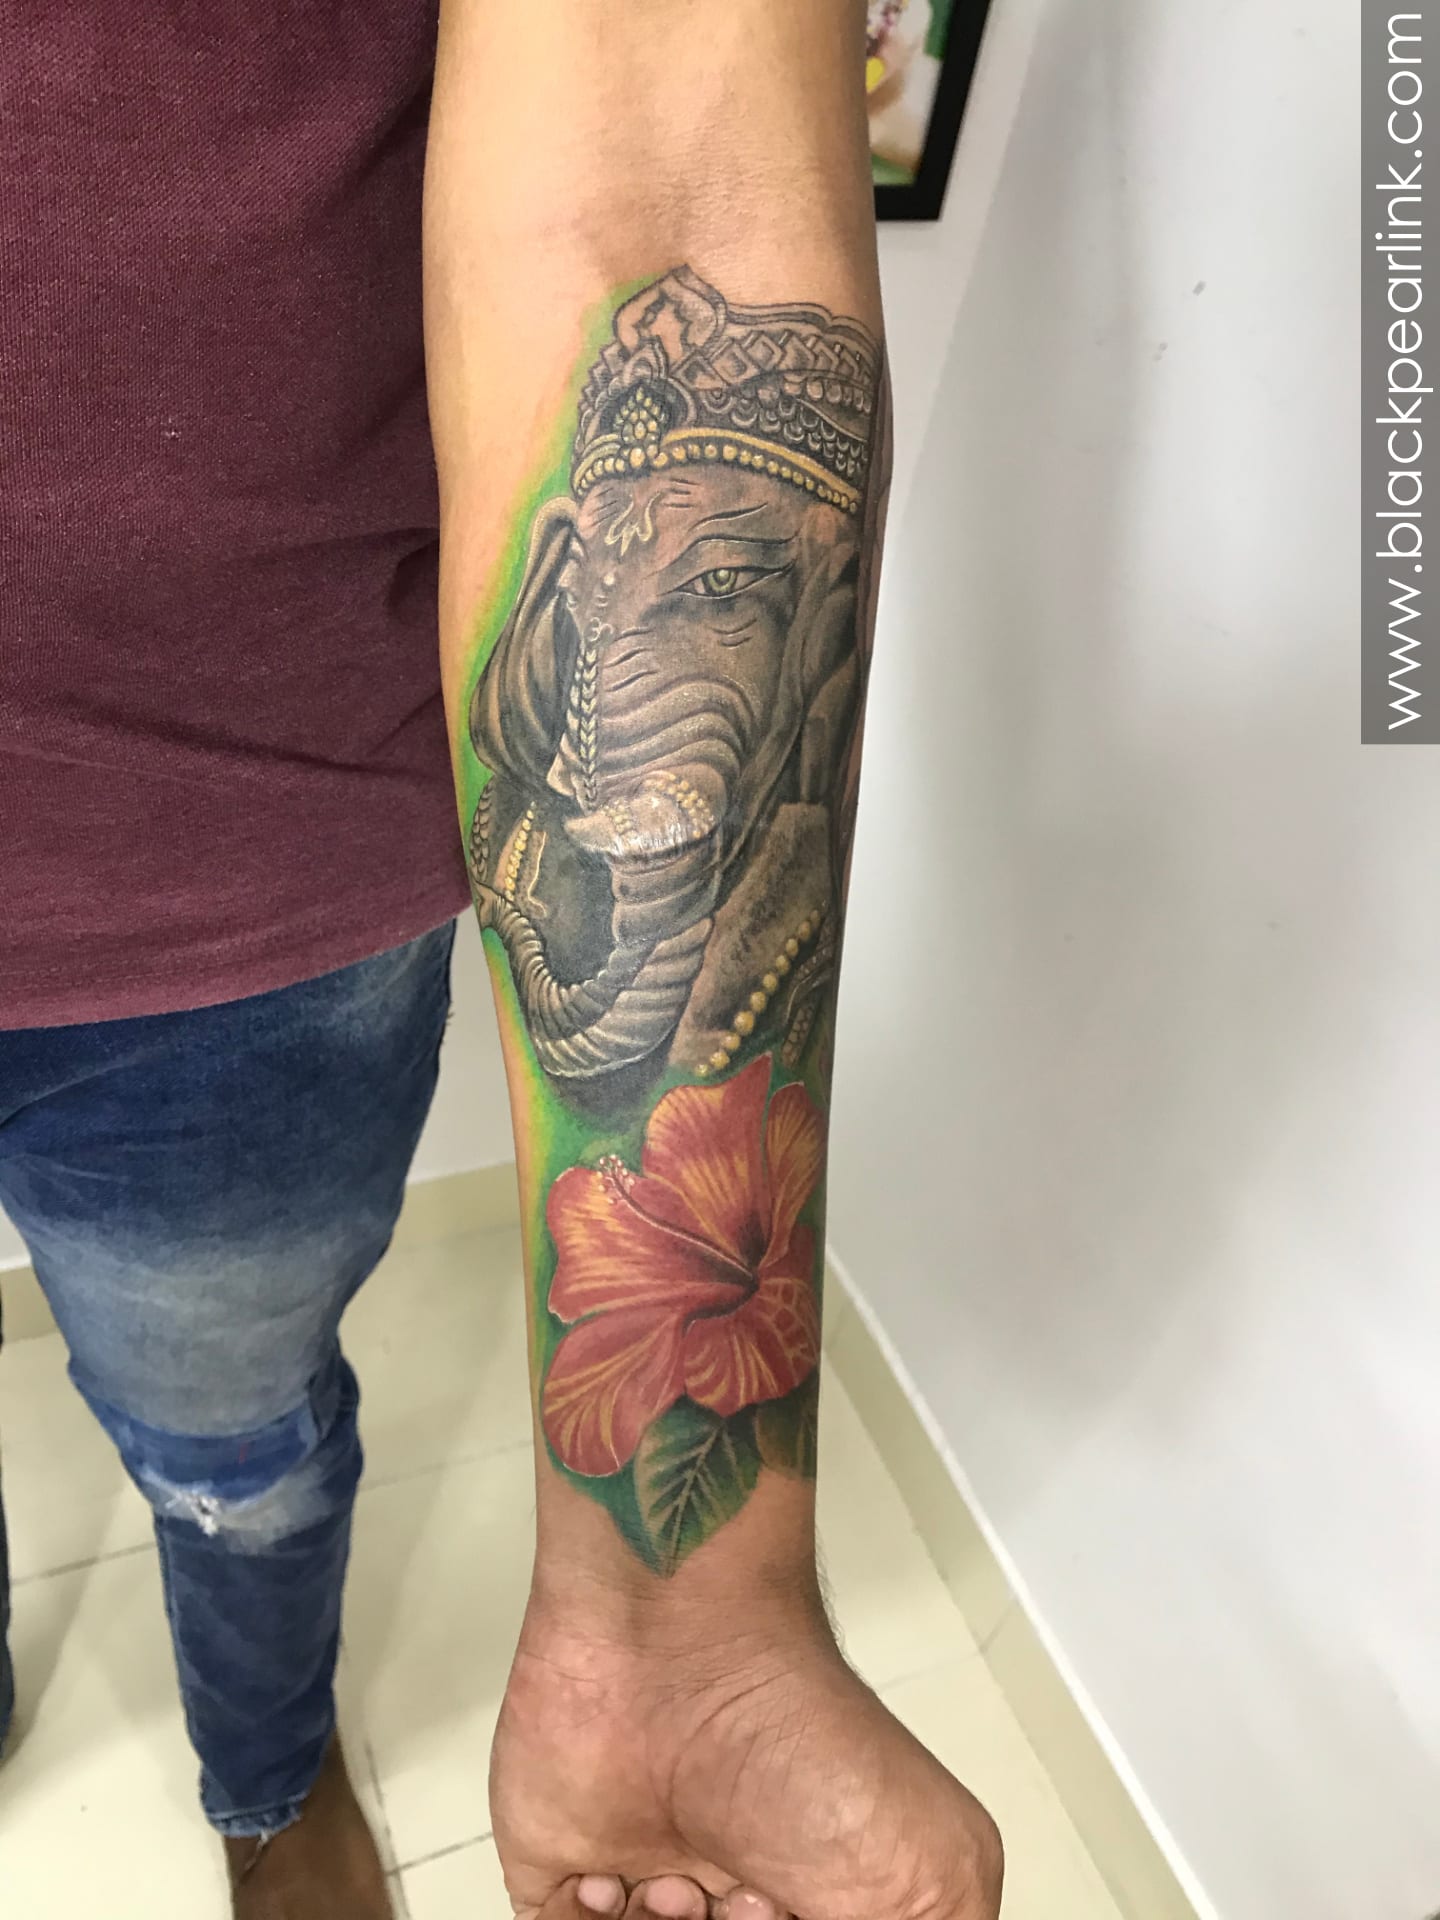 Tribal Lord Ganesha Tattoo on Arm - Ace Tattooz